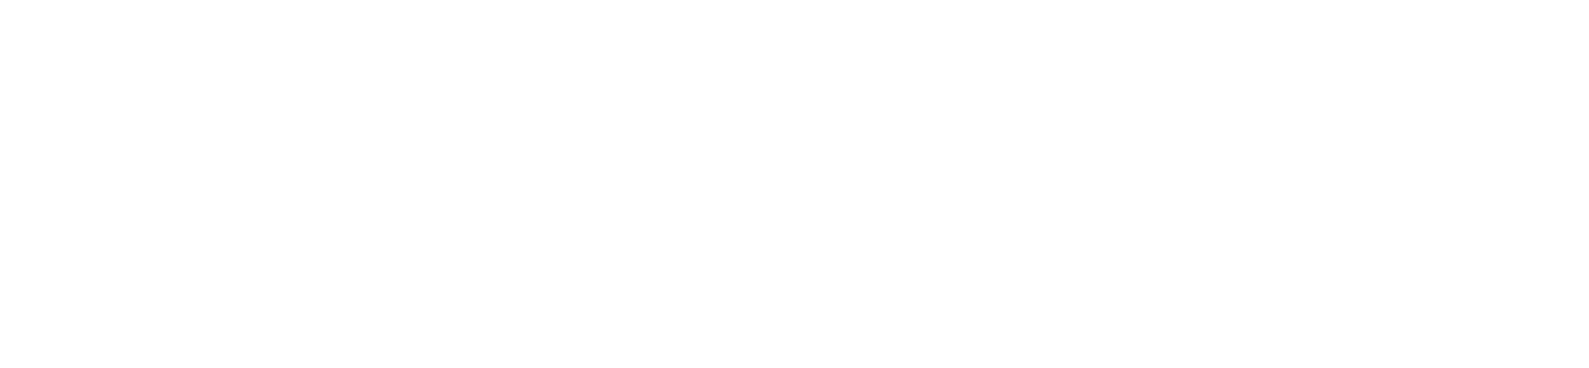 Kenvue logo large for dark backgrounds (transparent PNG)